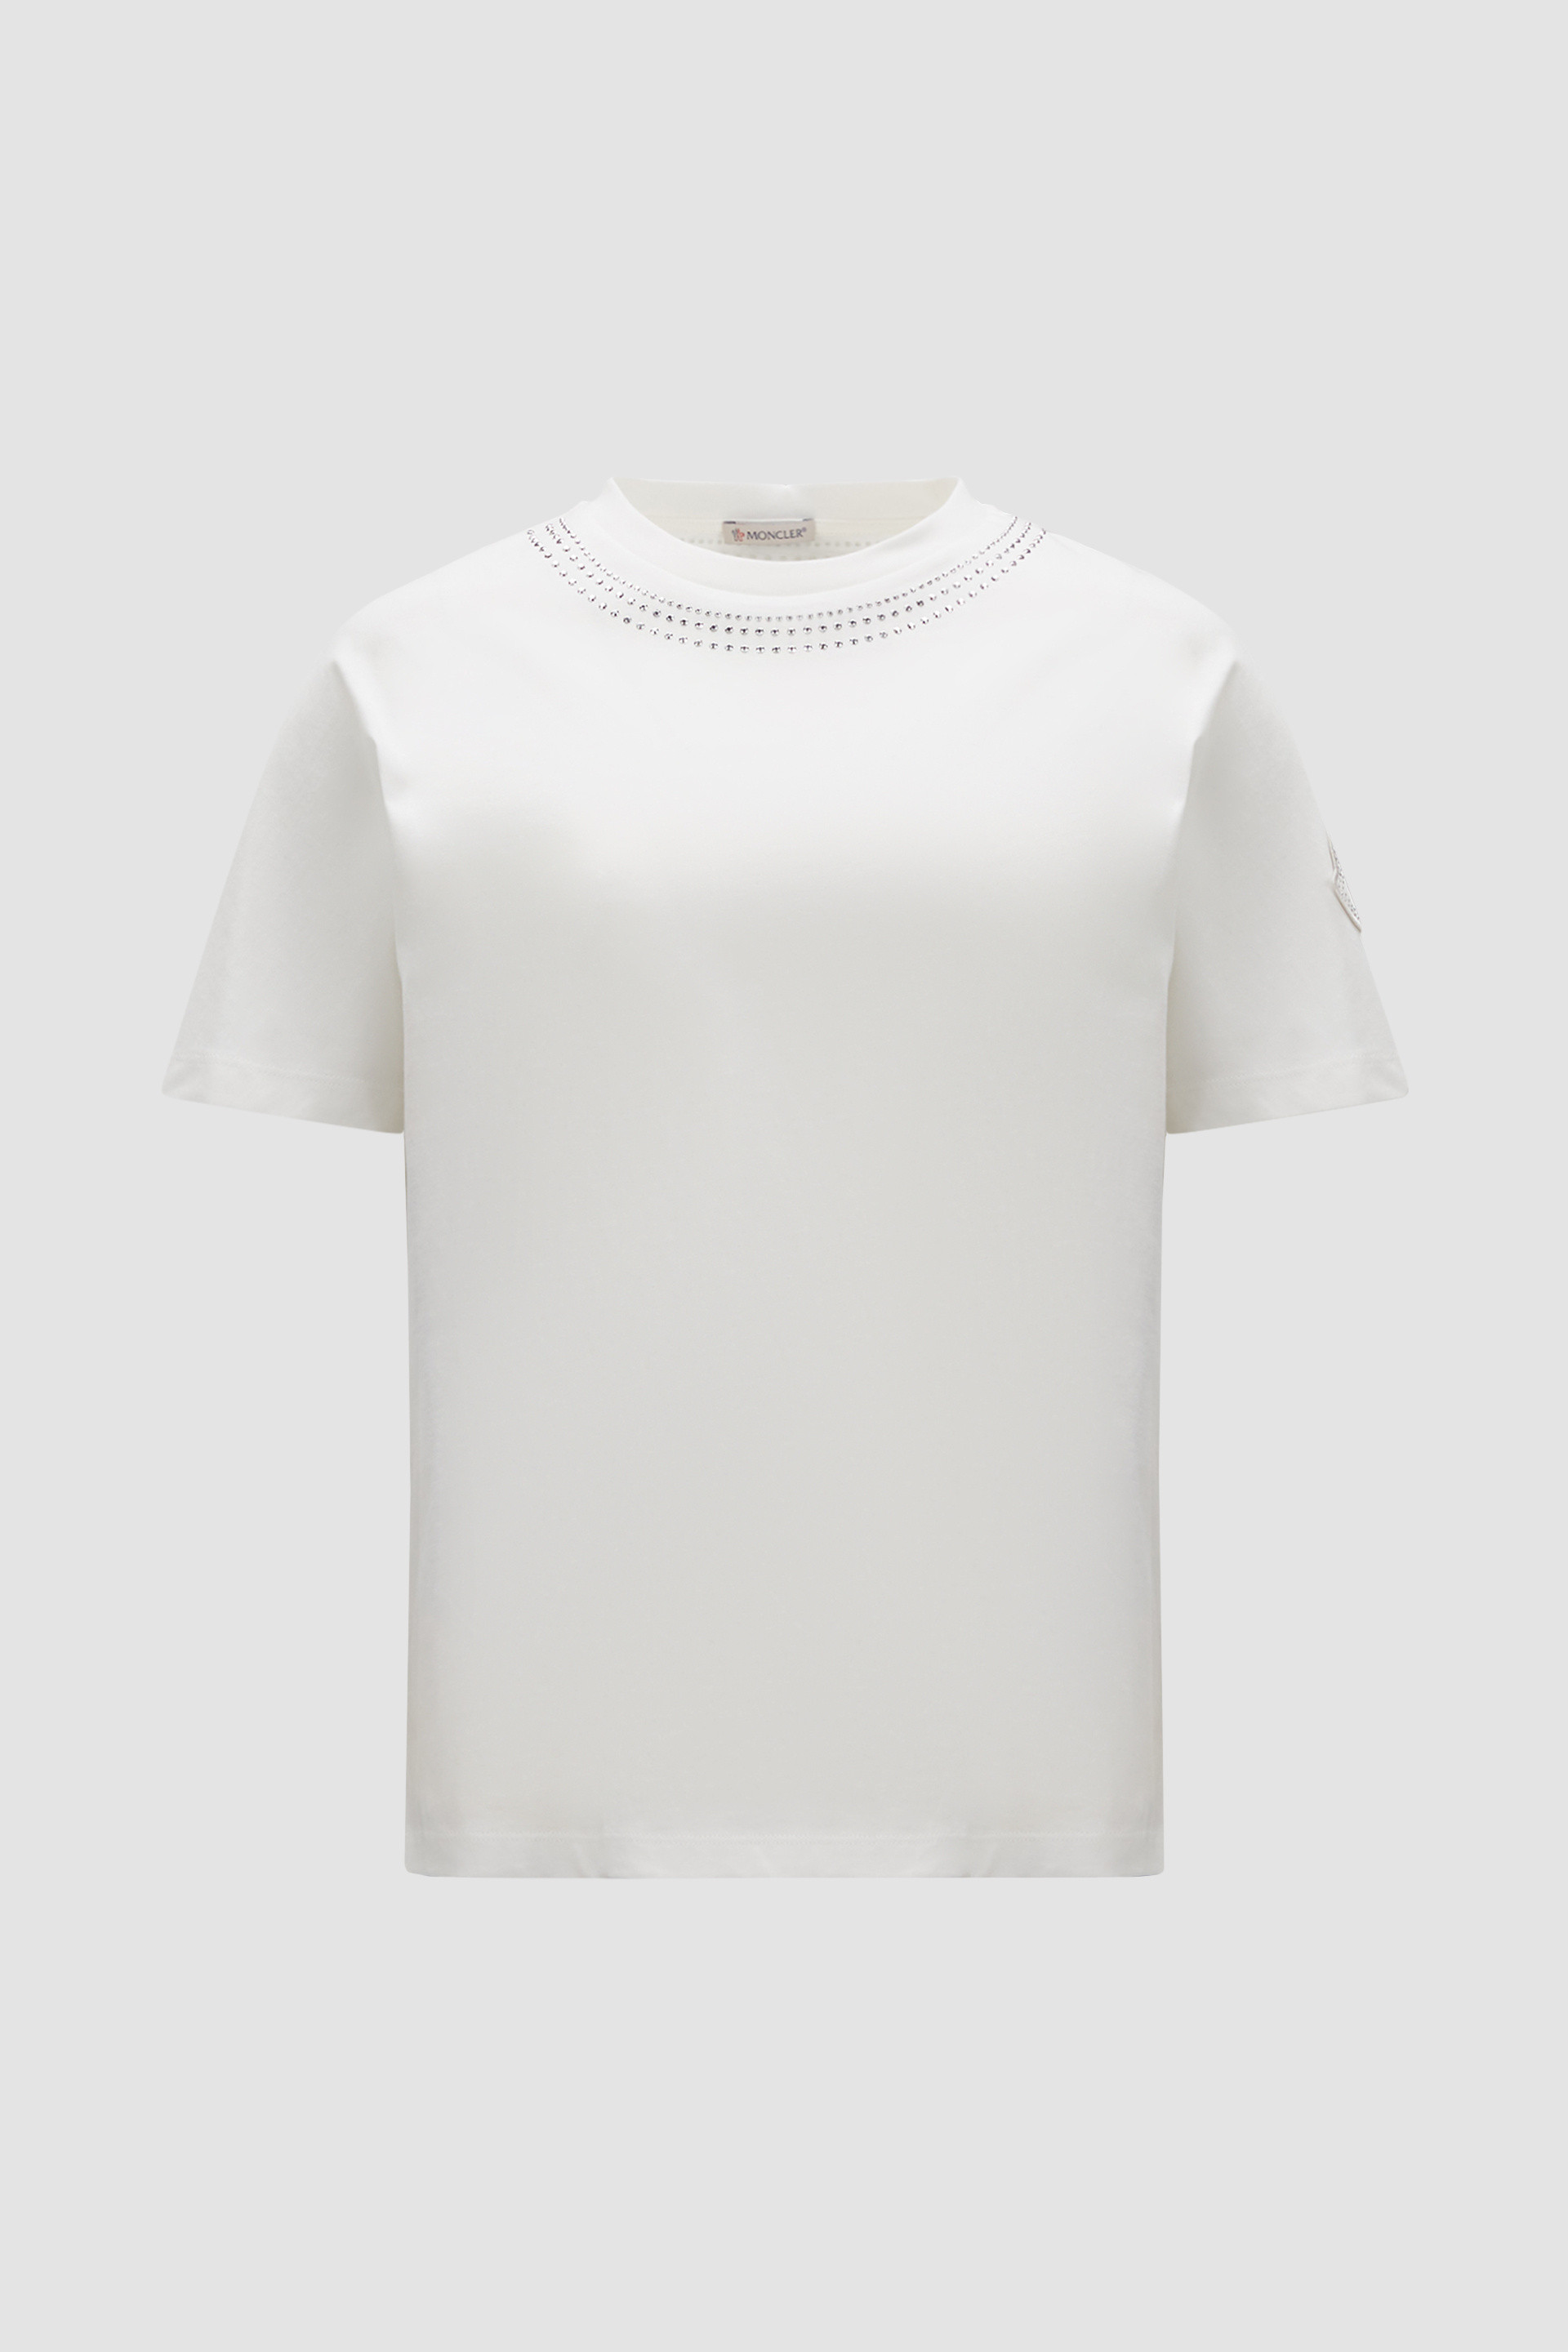 オフホワイト Tシャツ : トップ＆Tシャツ 向けの レディース 